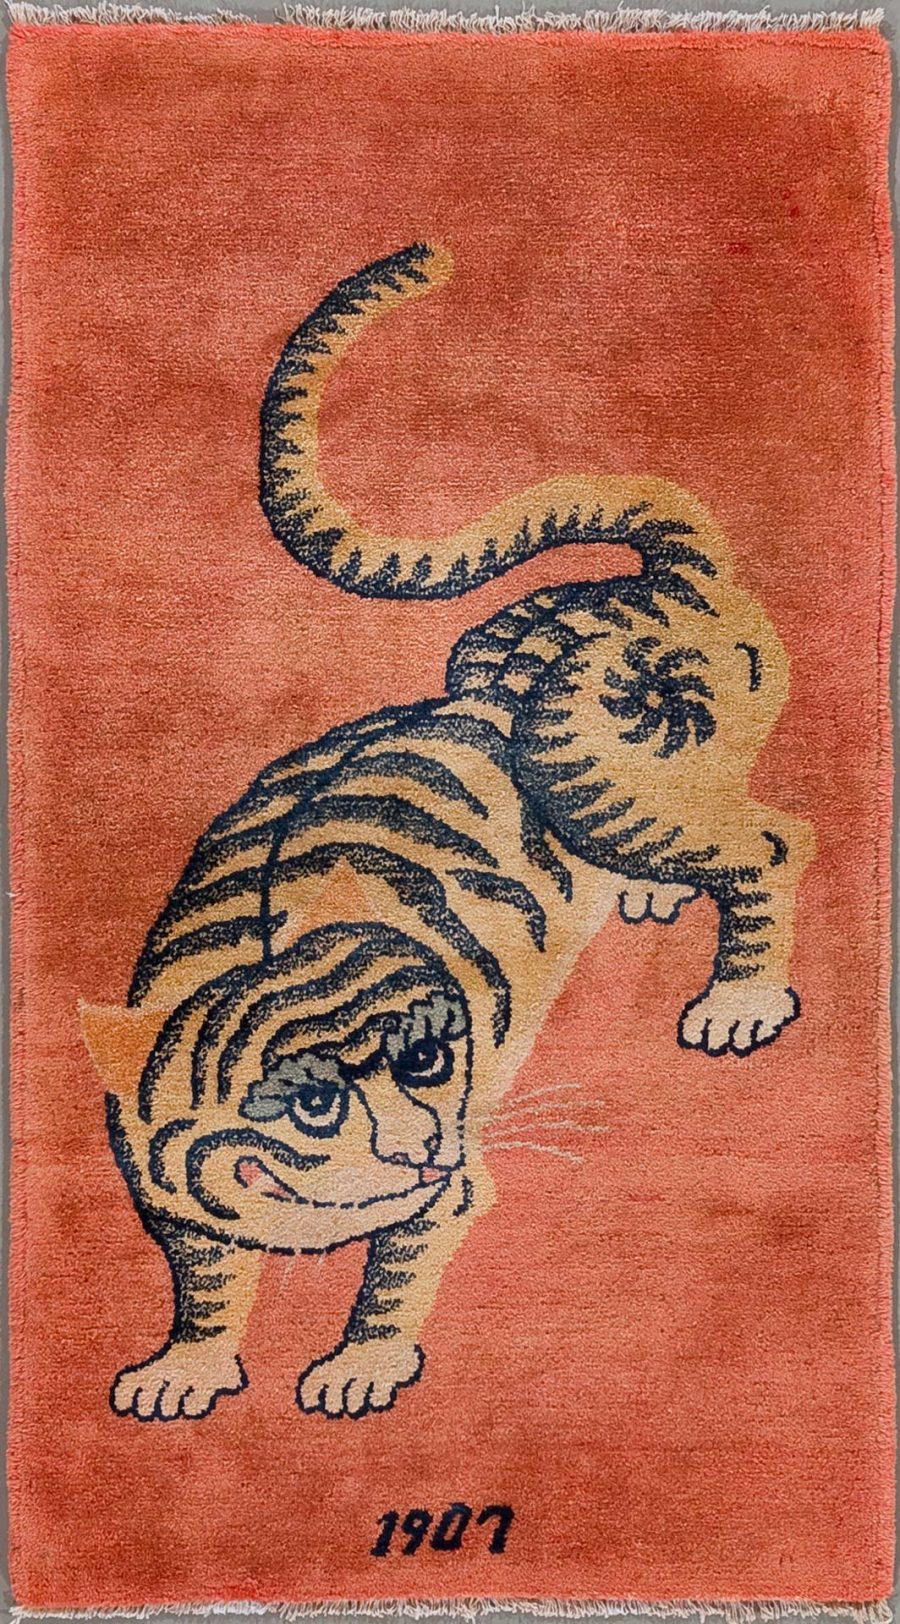 Vintage-Teppich mit einer stilisierten Darstellung eines Tigers auf orangefarbenem Grund, Jahreszahl 1907 im unteren Bereich.